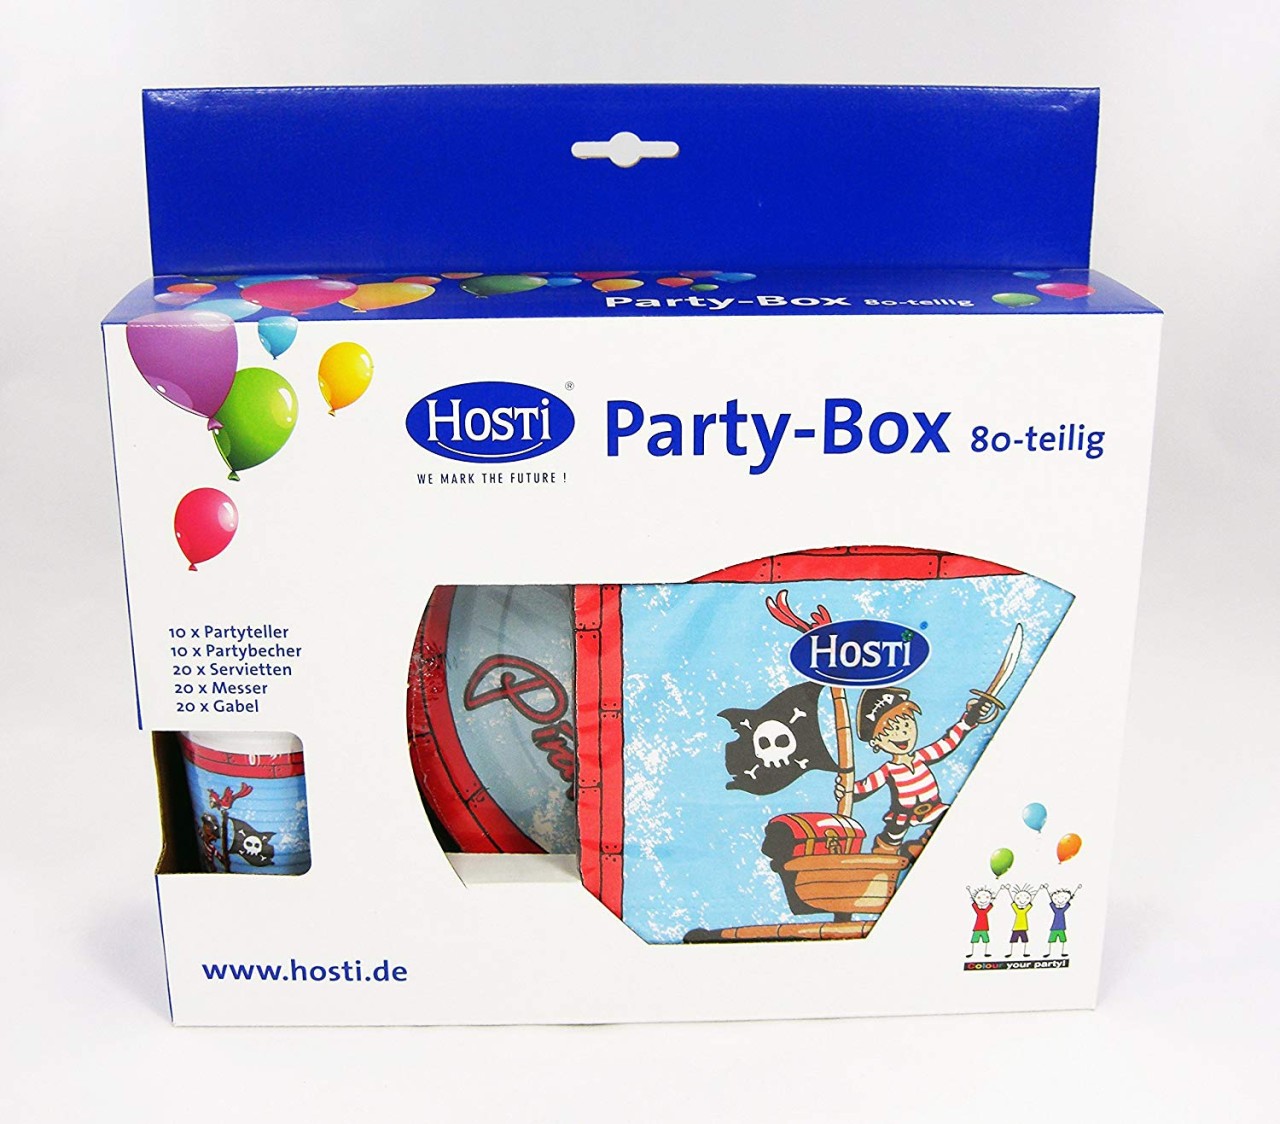 Partybox "Pirat", 80-teilig